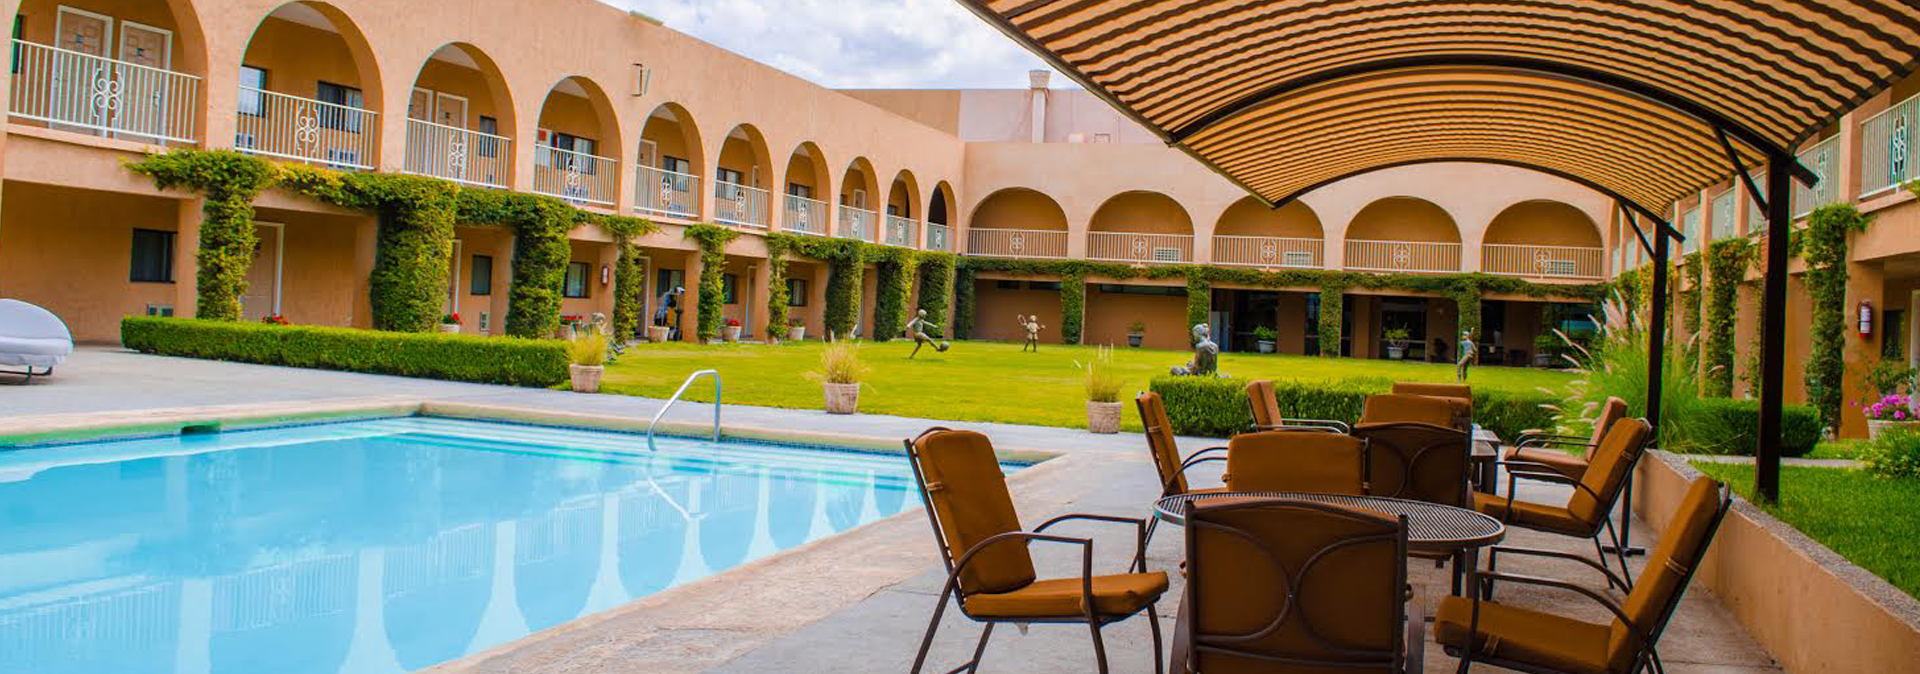 Habitaciones Hotel Santa Fe Hotel en Camargo, Chihuahua